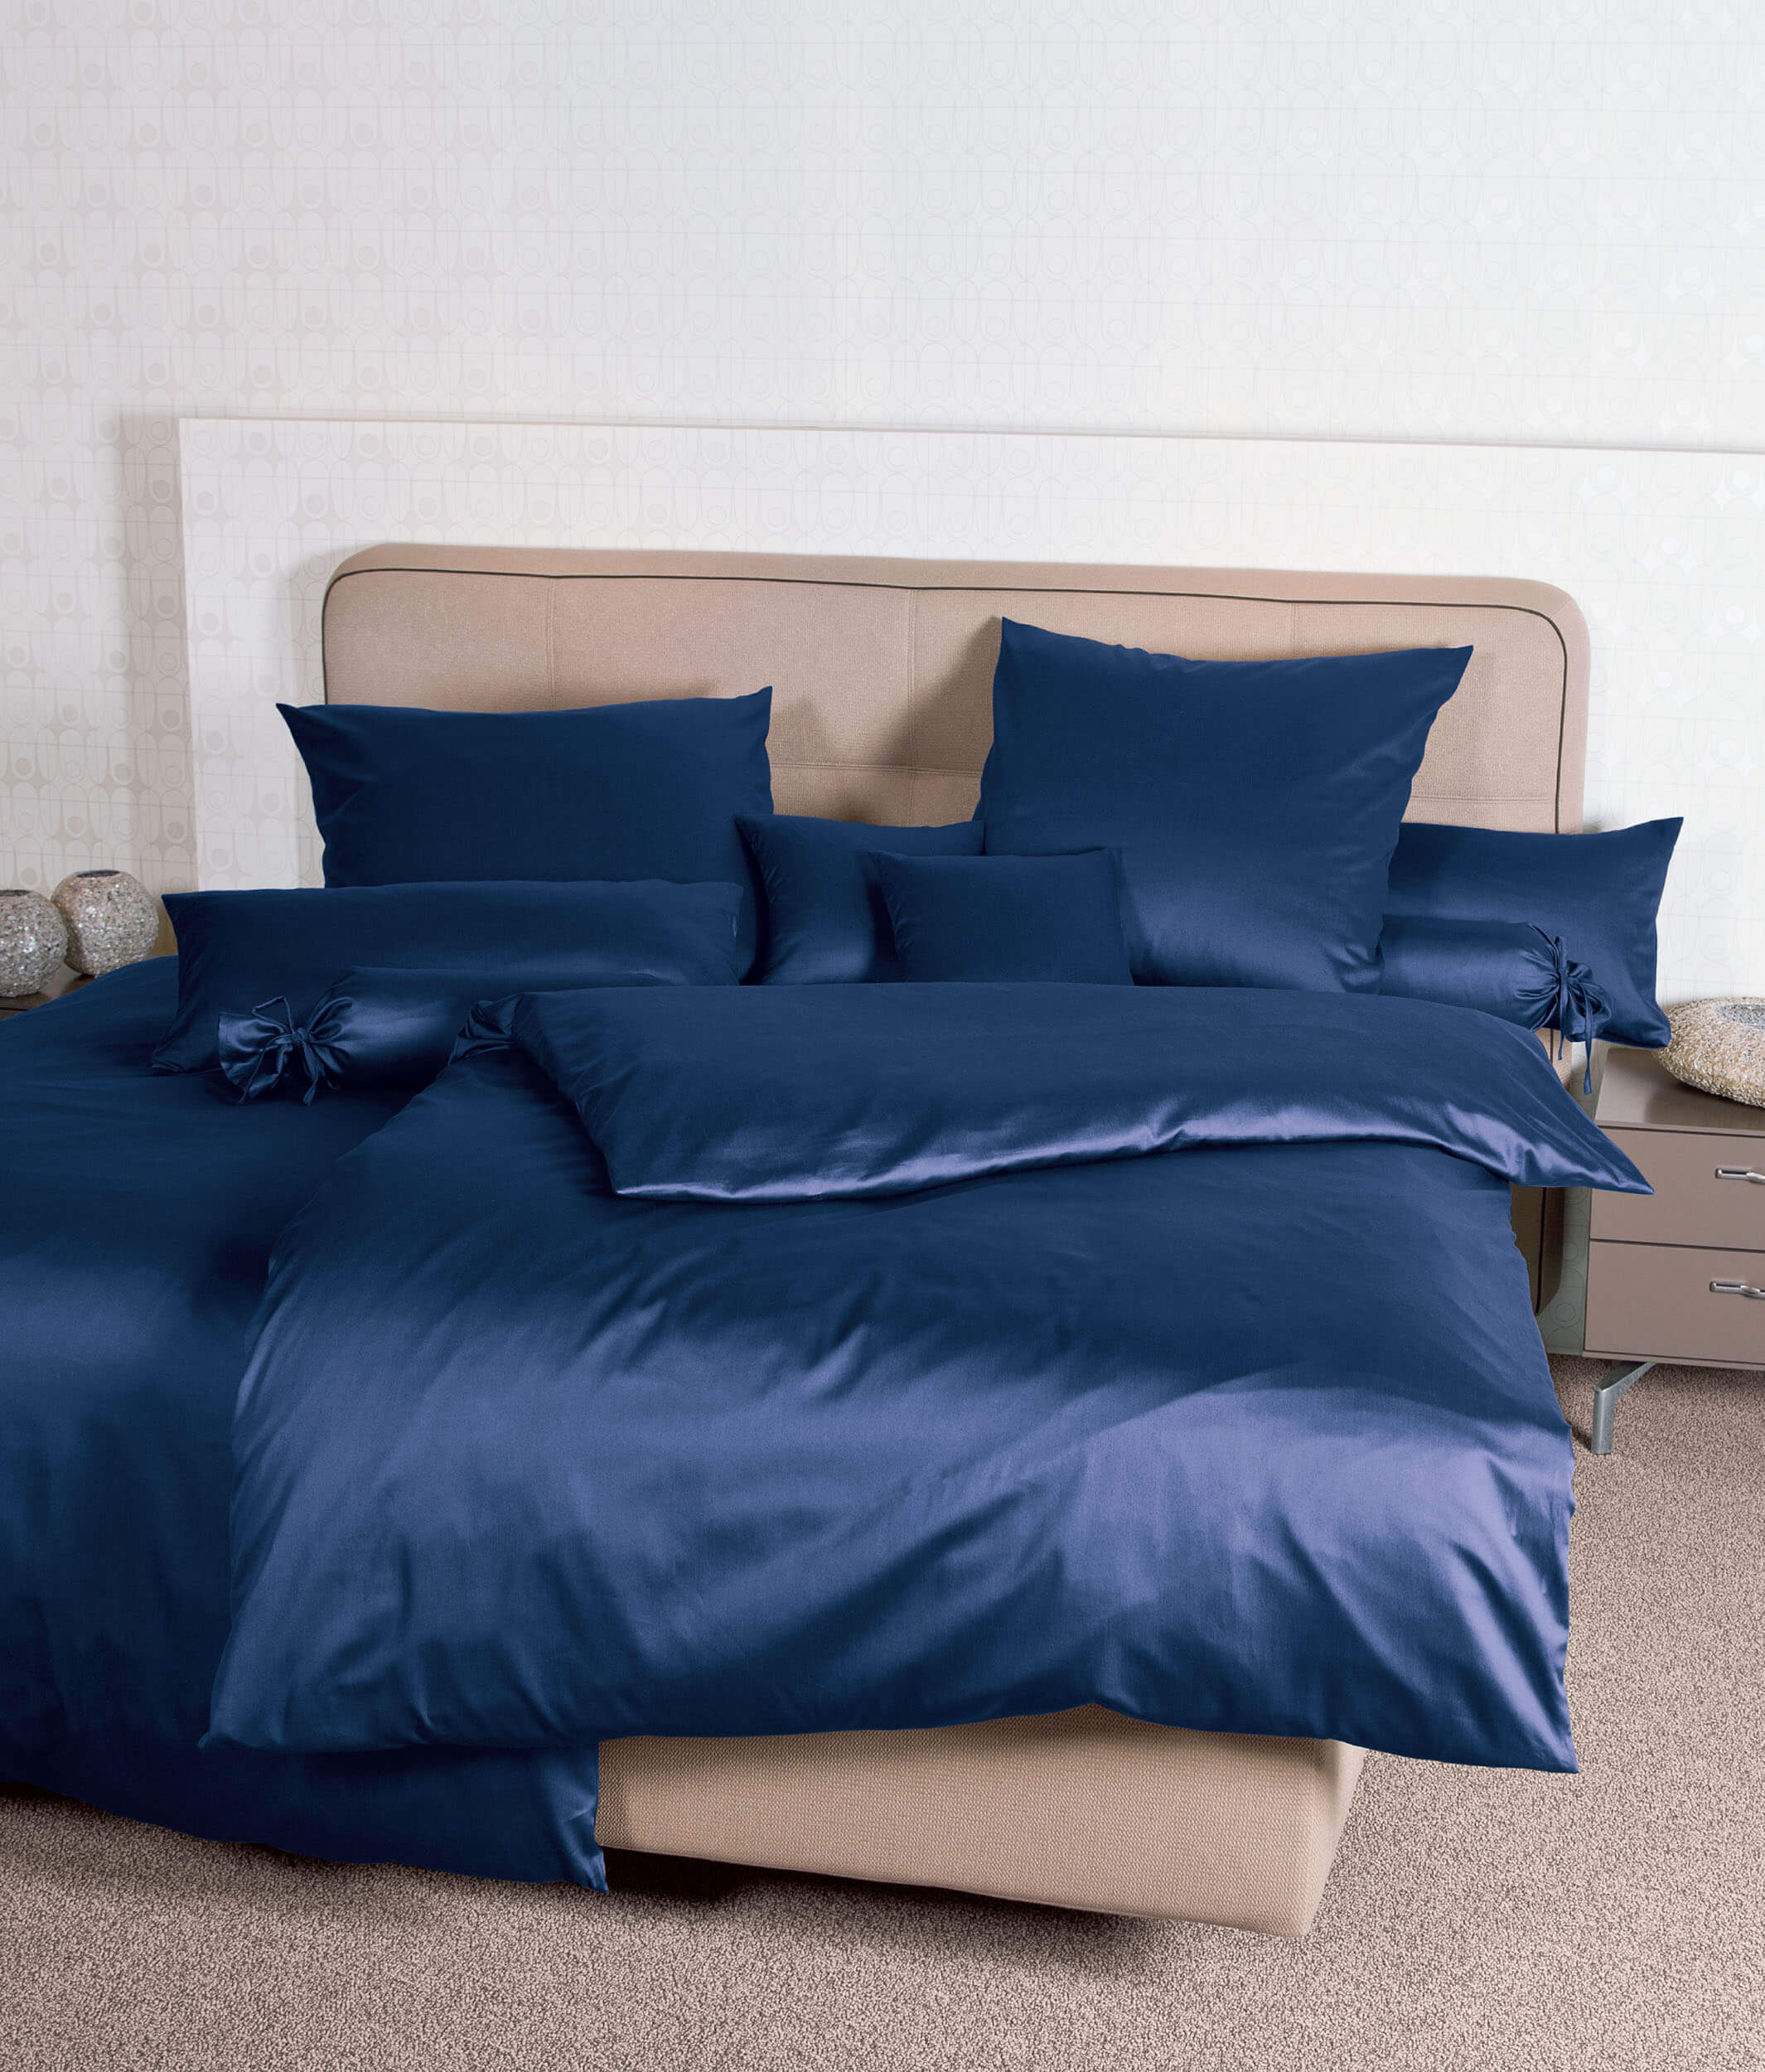 Синее постельное белье Colors Marine ☞ Размер пододеяльника: 155 x 200 см ☞ Размер простыни: Без простыни ☞ Размер наволочек: 50 x 70 см (1 шт.)